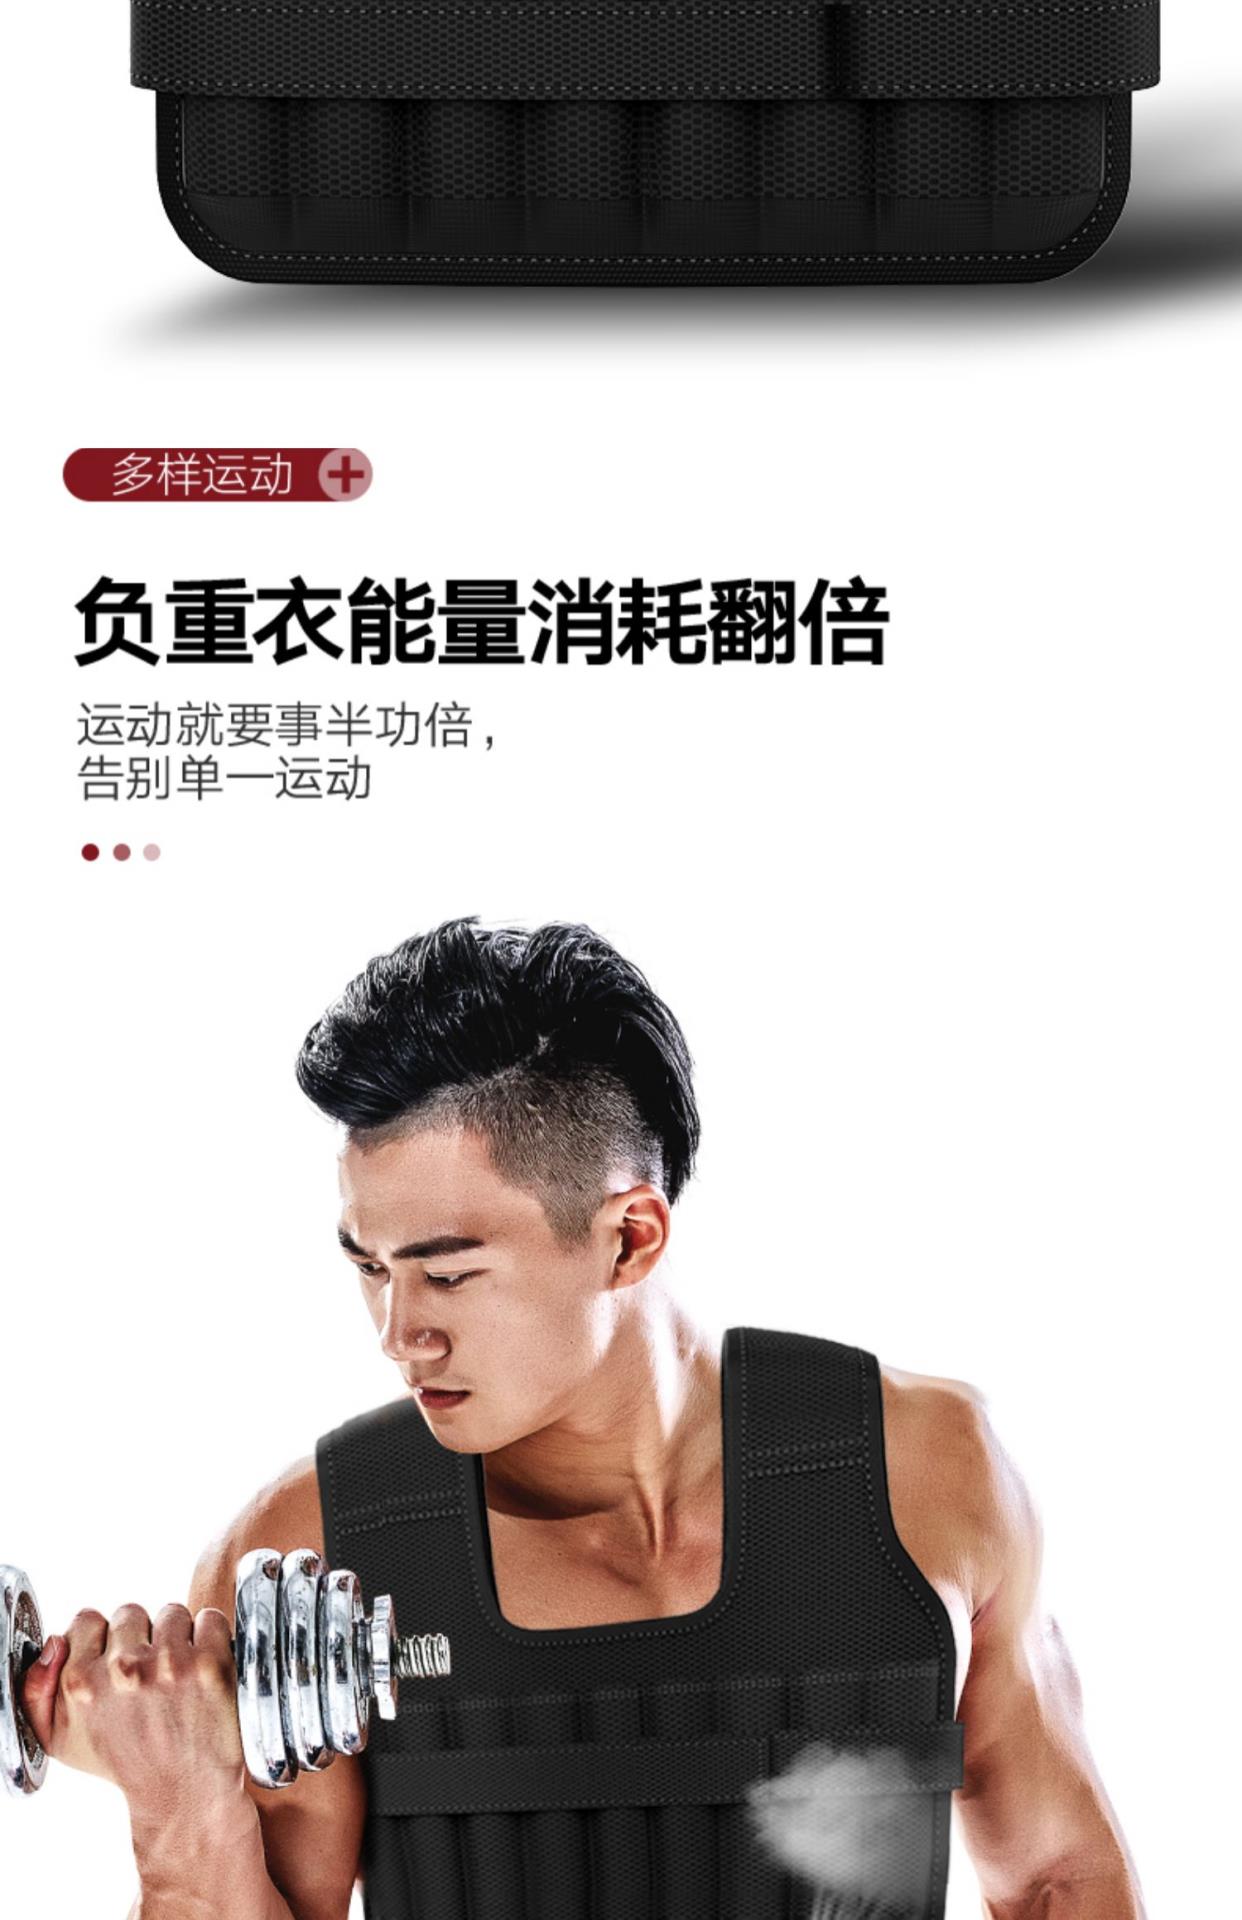 Trọng lượng chính hãng vest chạy vest vô hình thép tấm siêu mỏng chì khối cát quần áo thiết bị thể dục dụng cụ thể thao xà cạp - Taekwondo / Võ thuật / Chiến đấu